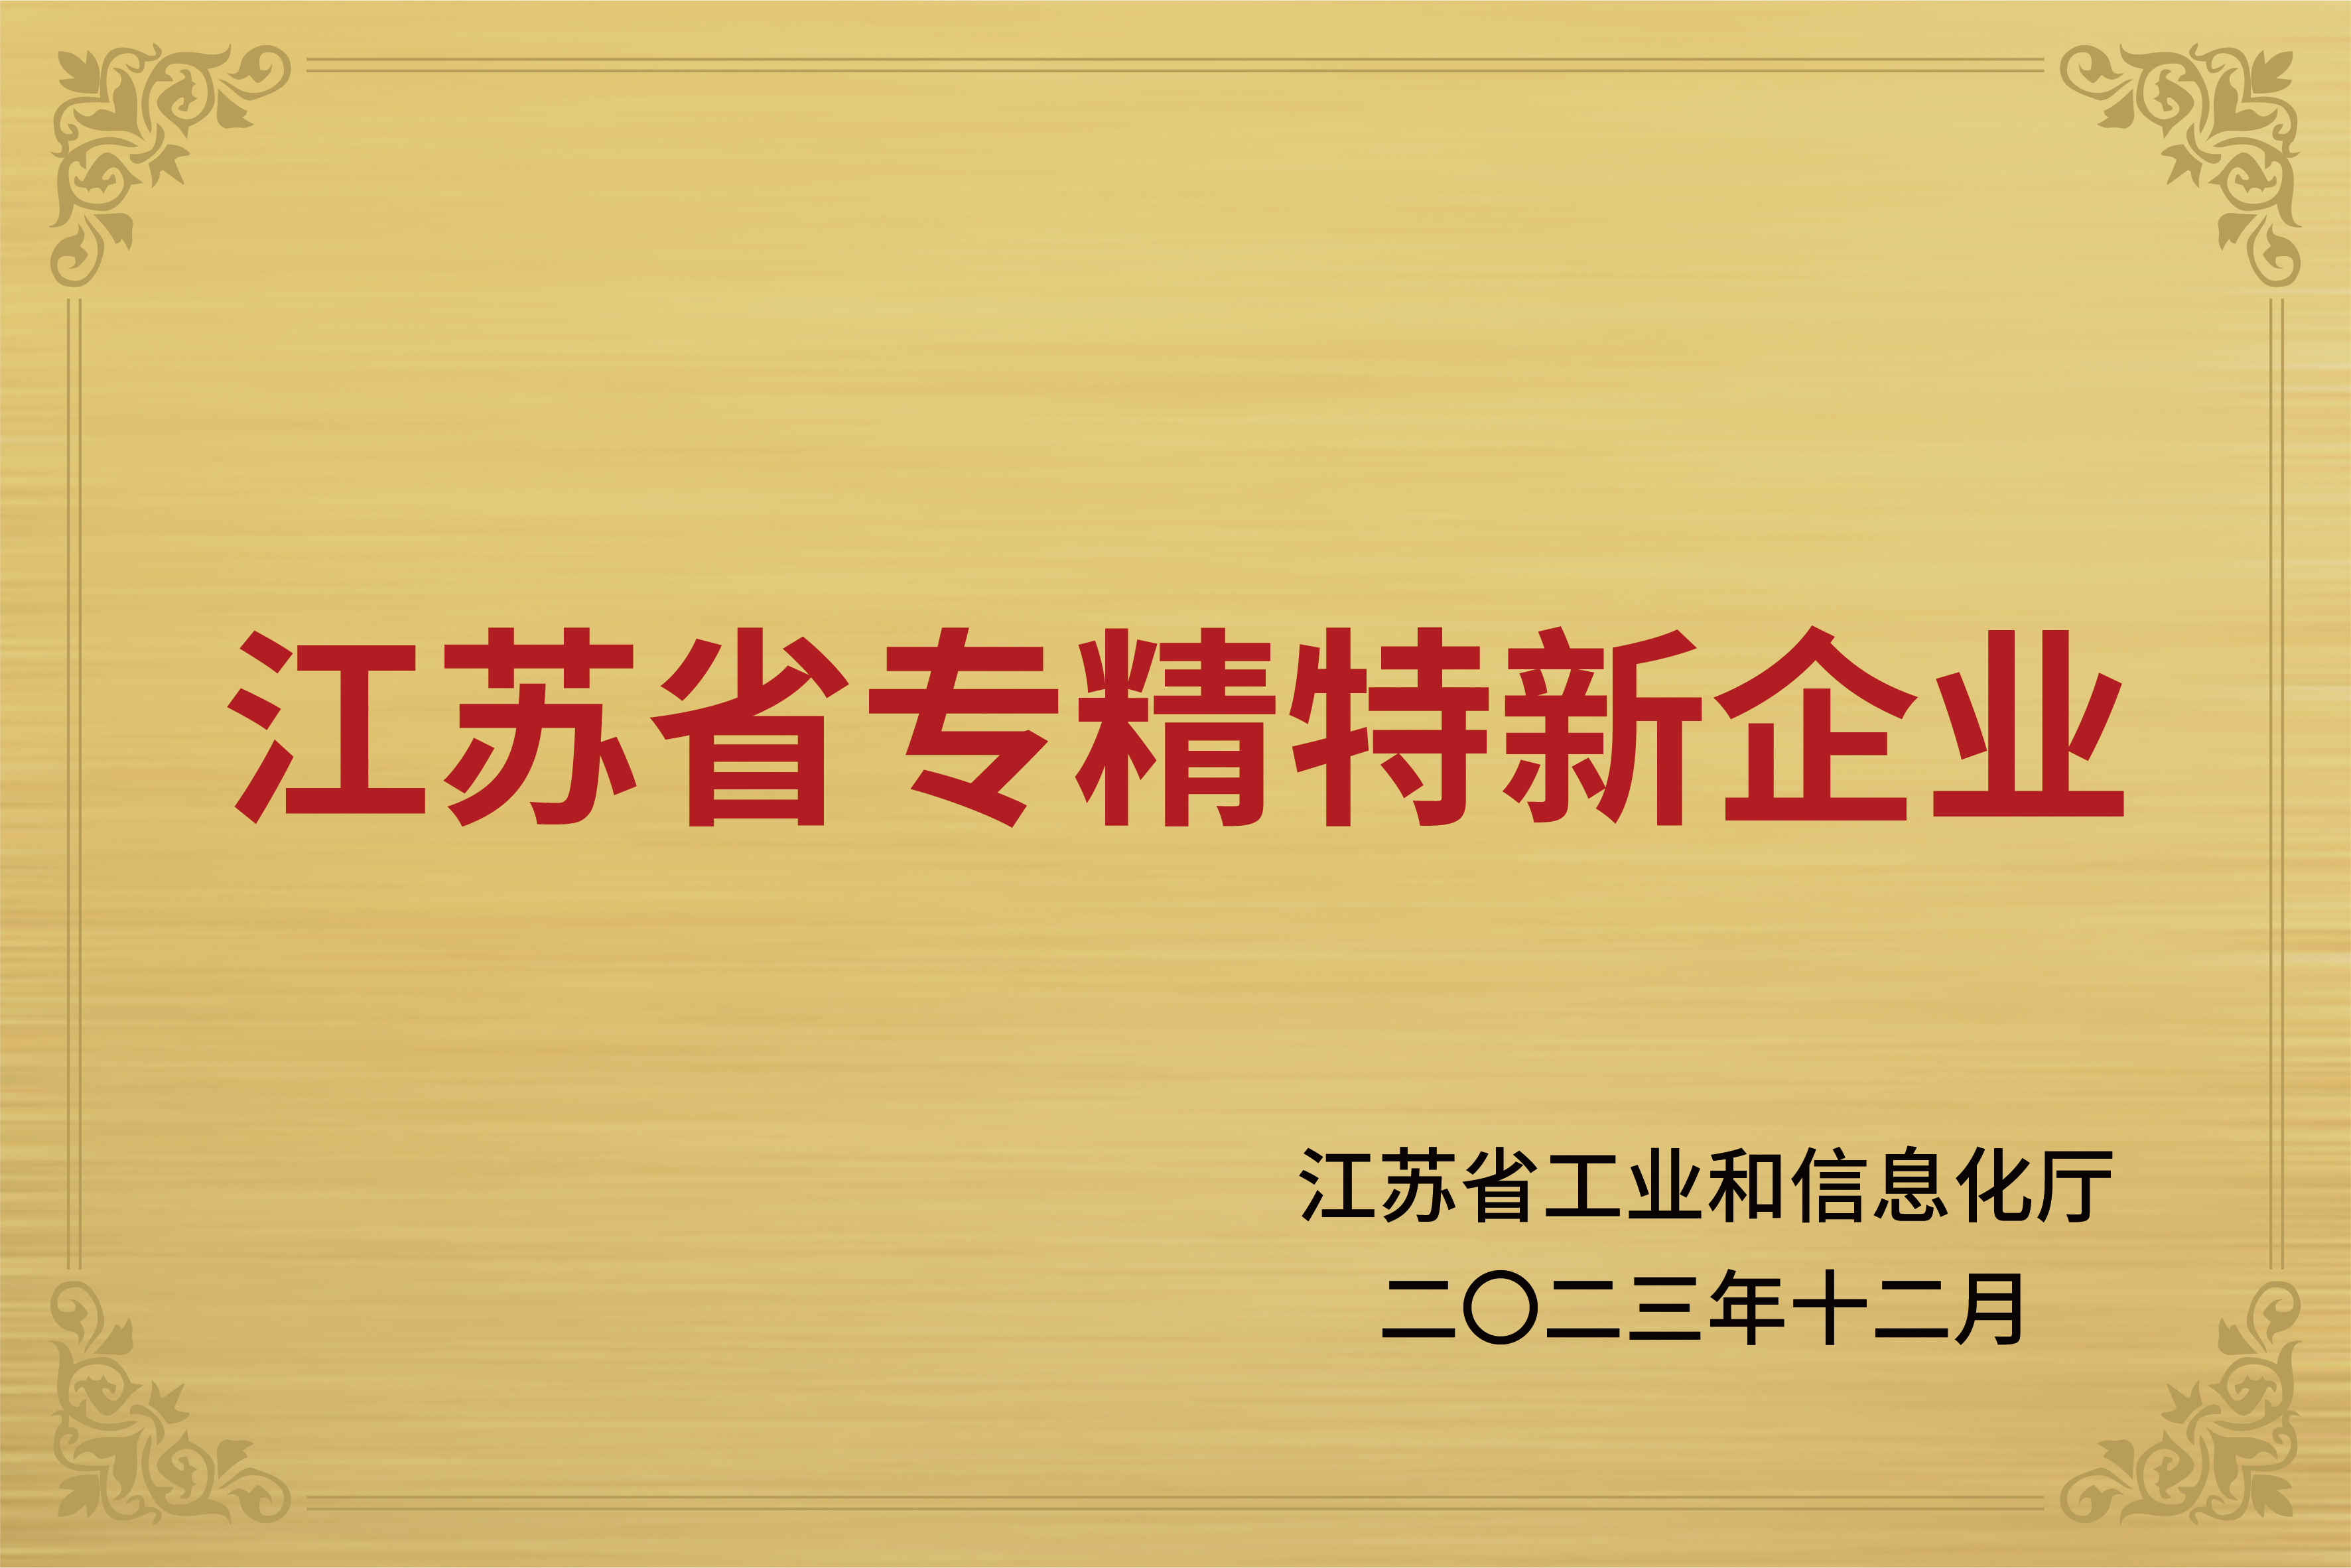 فاز Lees Power بلقب "مقاطعة Jiangsu المتخصصة والخاصة للمؤسسة الجديدة "